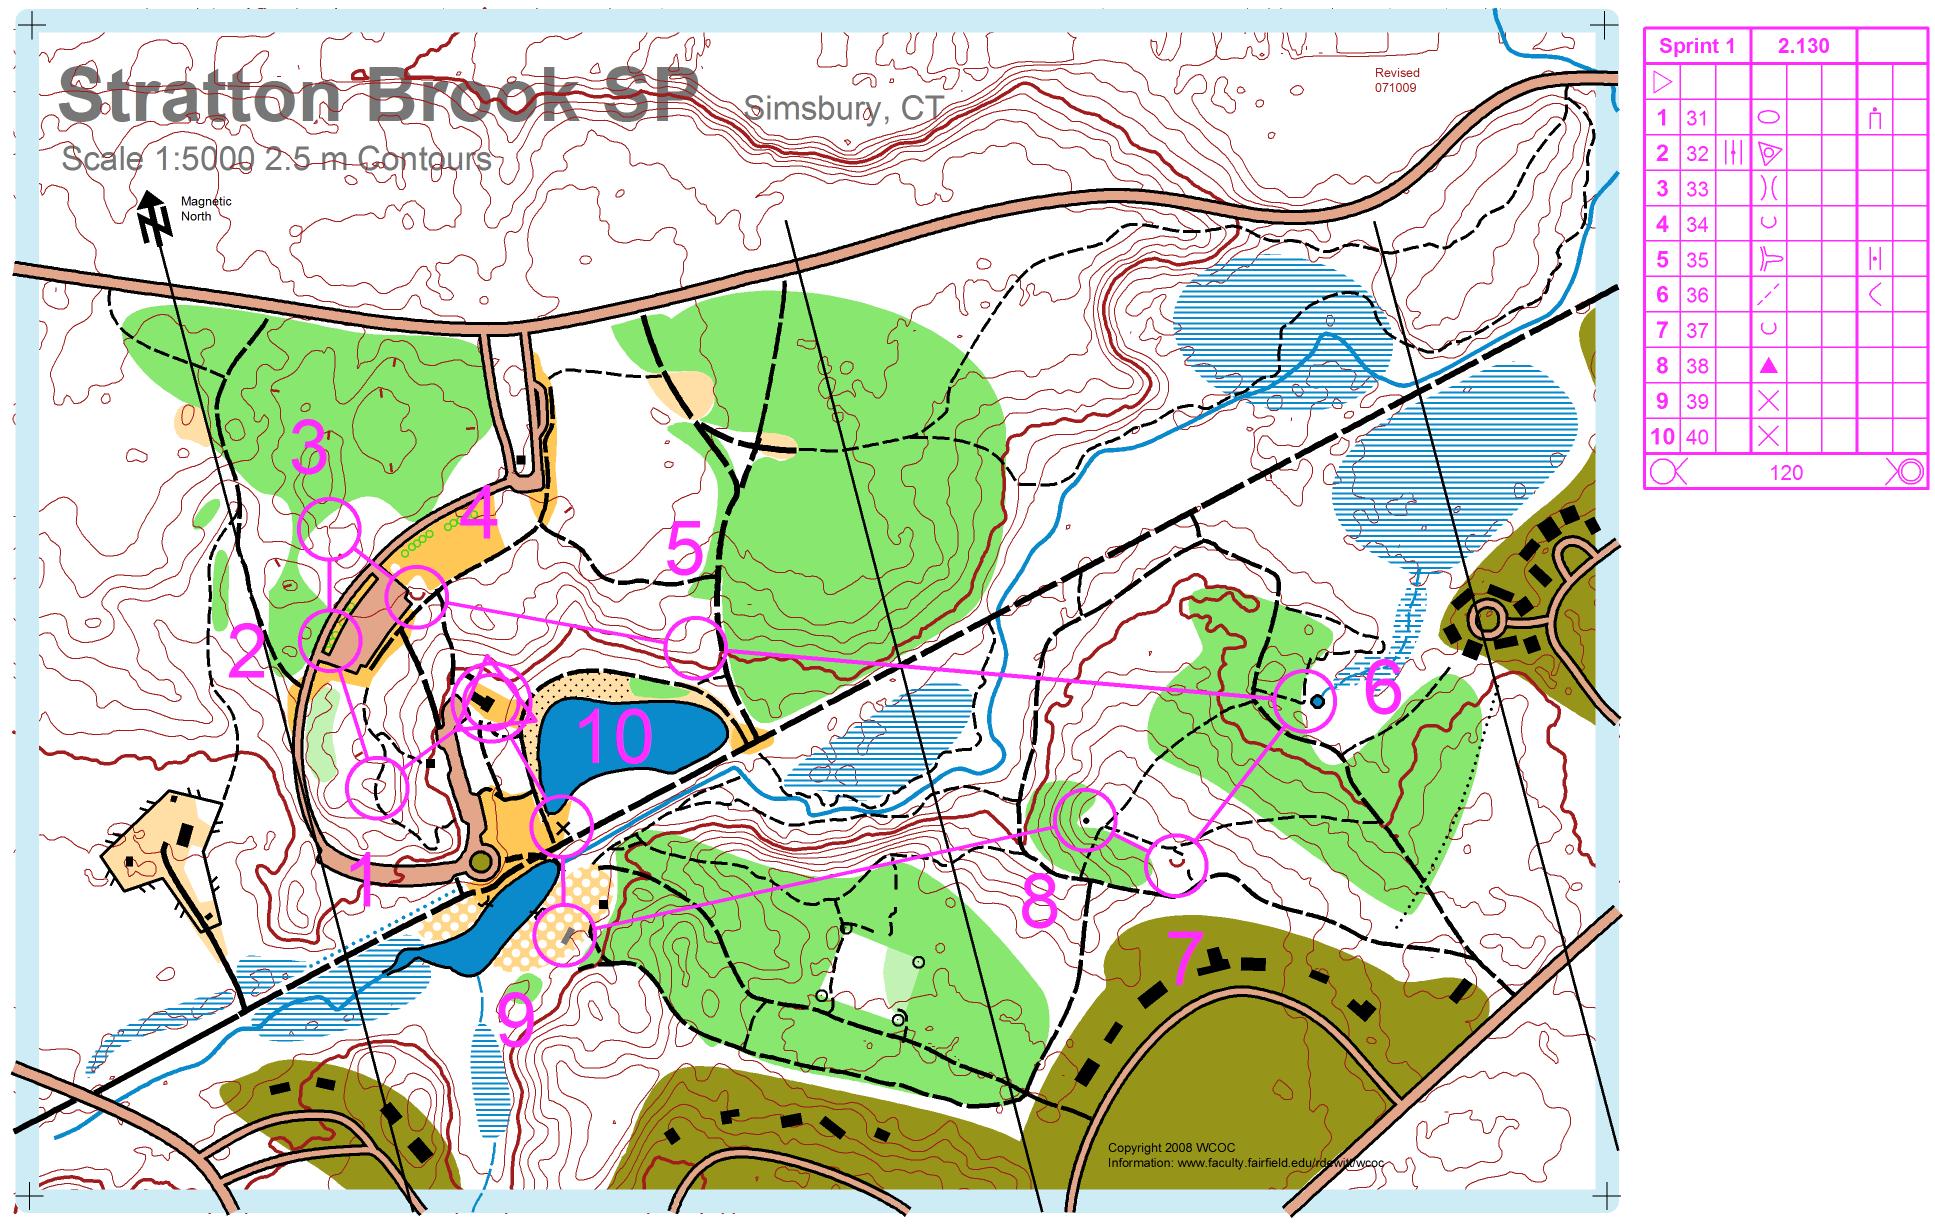 Stratton Brook Sprint 1 (16/09/2009)